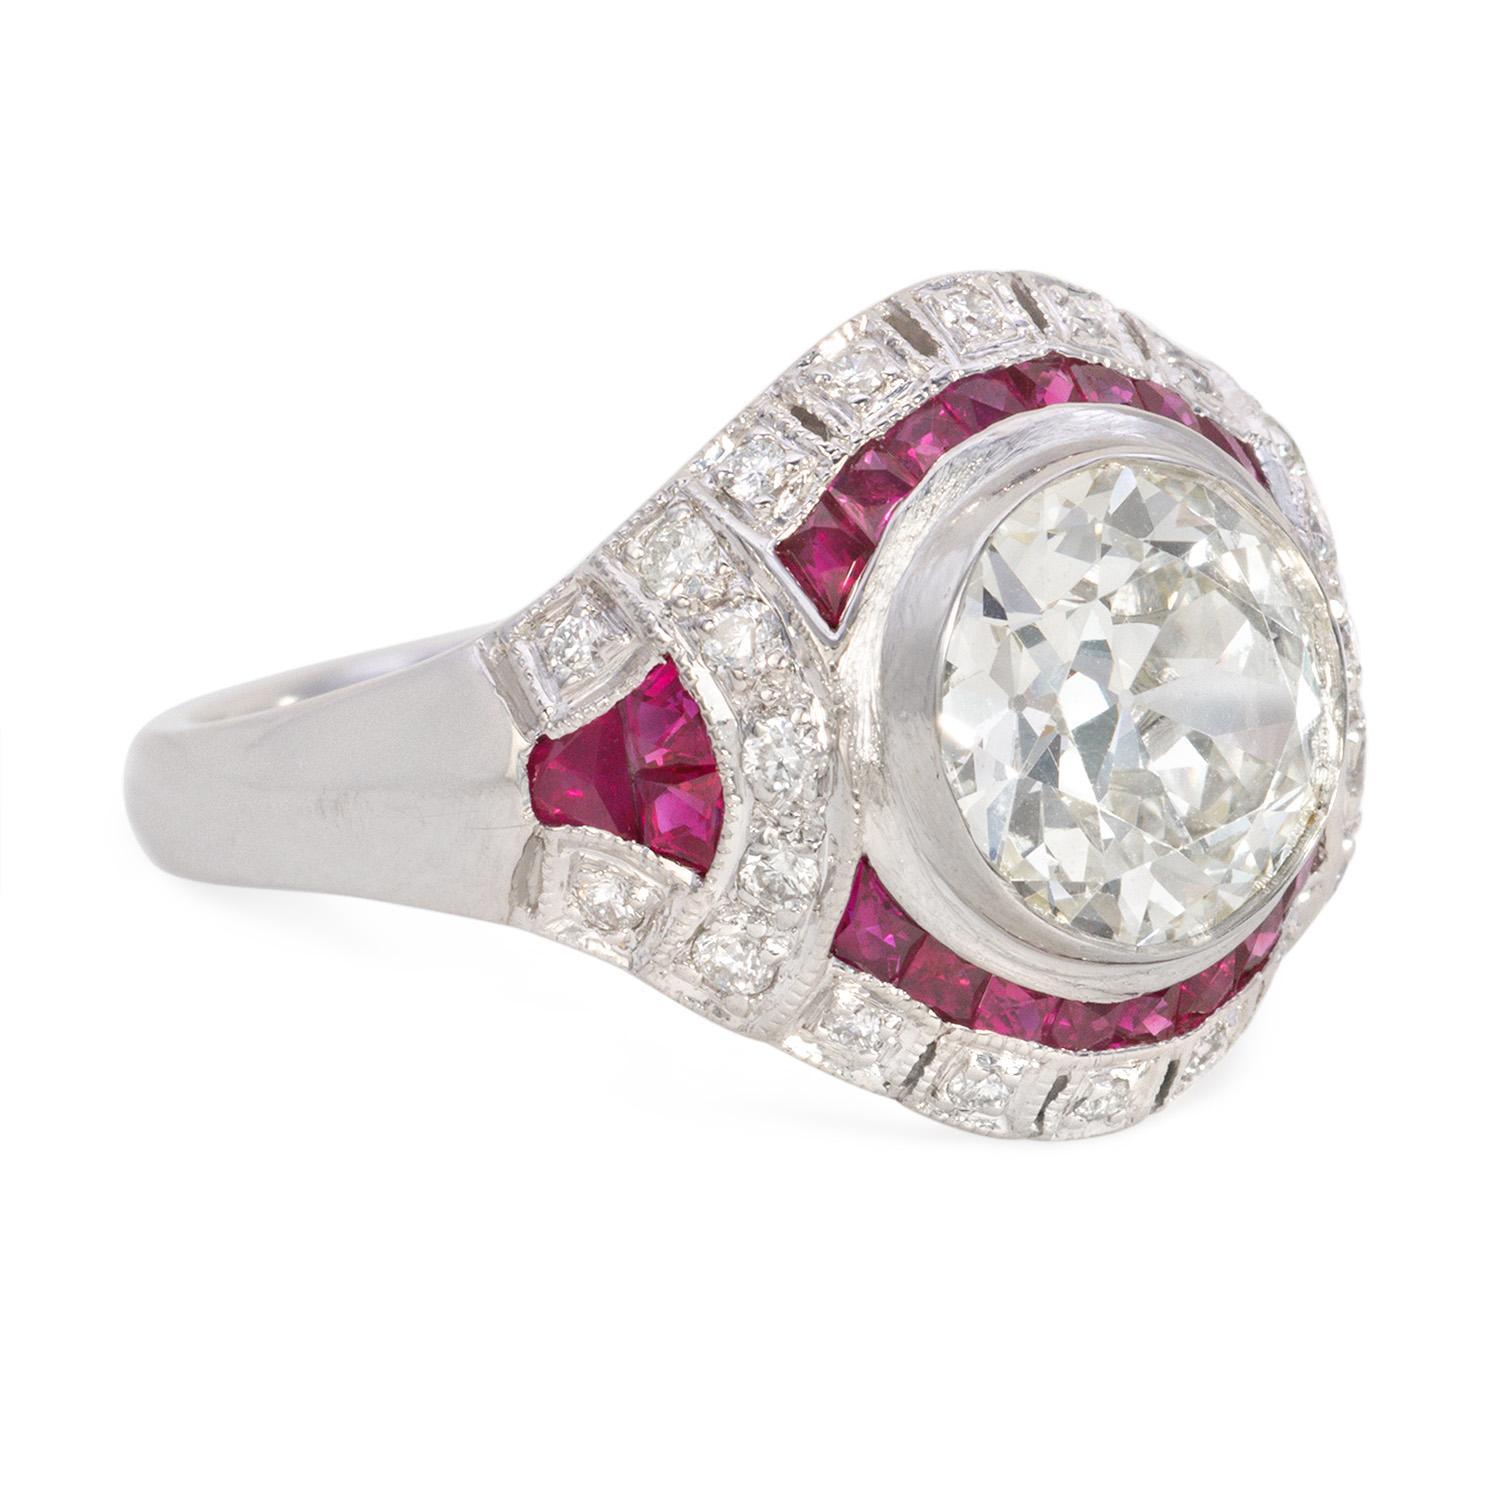 Dieser atemberaubende Art-Déco-Ring enthält einen GIA-zertifizierten 2,56-Karat-Diamanten mit einer Reinheit von N VS1. Der Diamant in der Mitte ist elegant von 1,15 Karat leuchtenden Rubinen umgeben, die der Platinfassung einen Hauch von Farbe